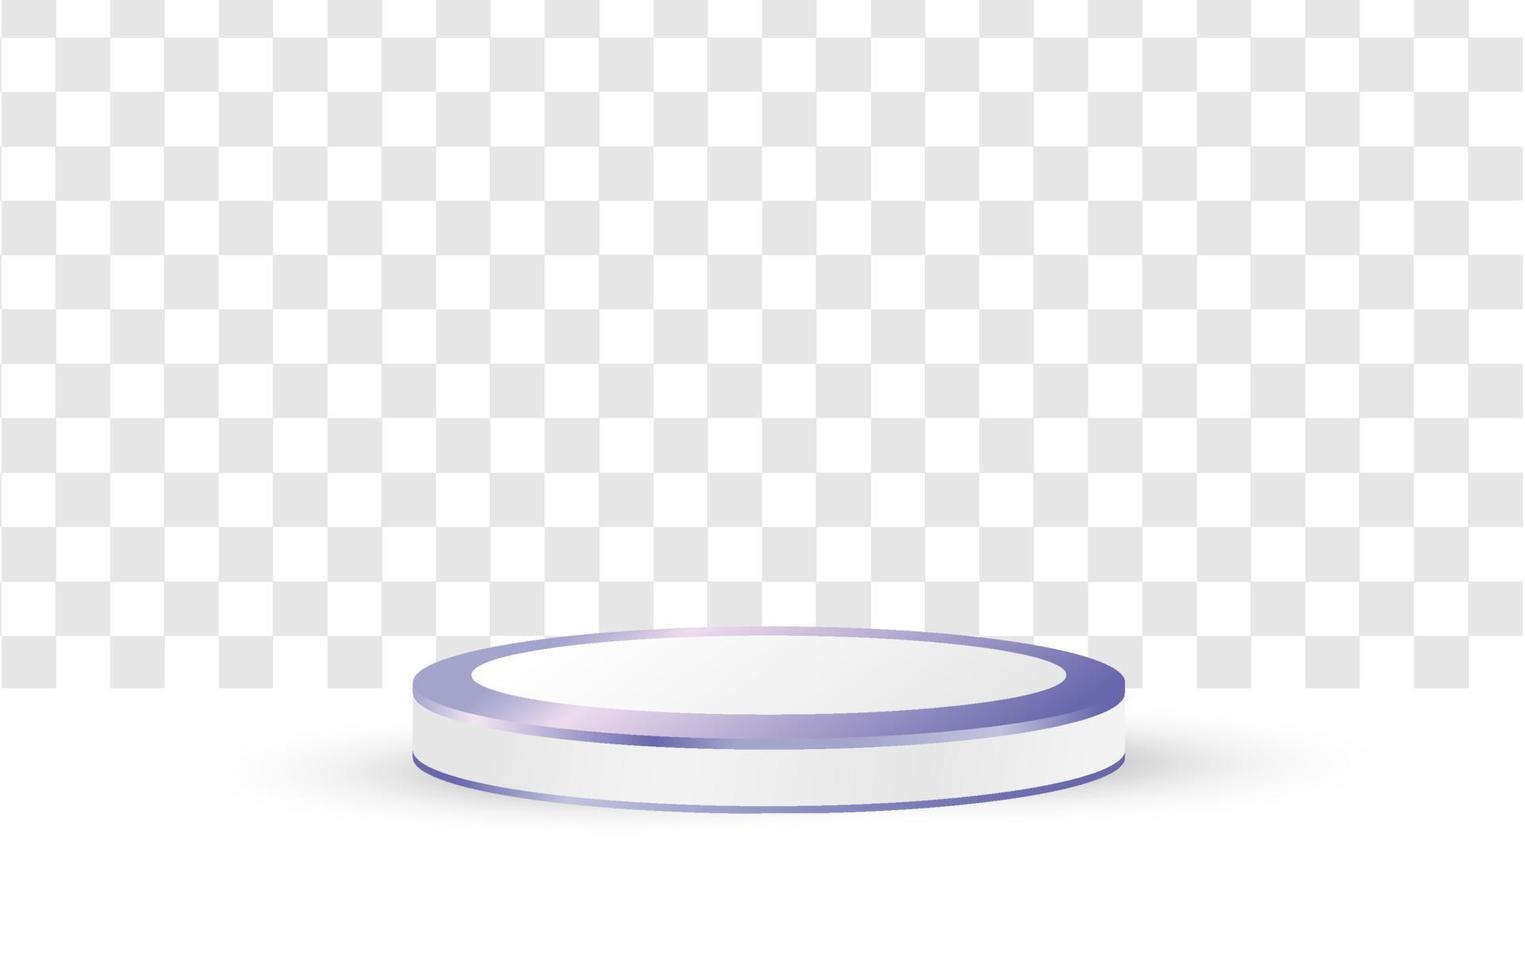 Diseño de vector de podio 3d sobre fondo blanco transparente. forma de círculo geométrico de textura de podio púrpura. para escaparates de productos y maquetas publicitarias. plantillas modernas